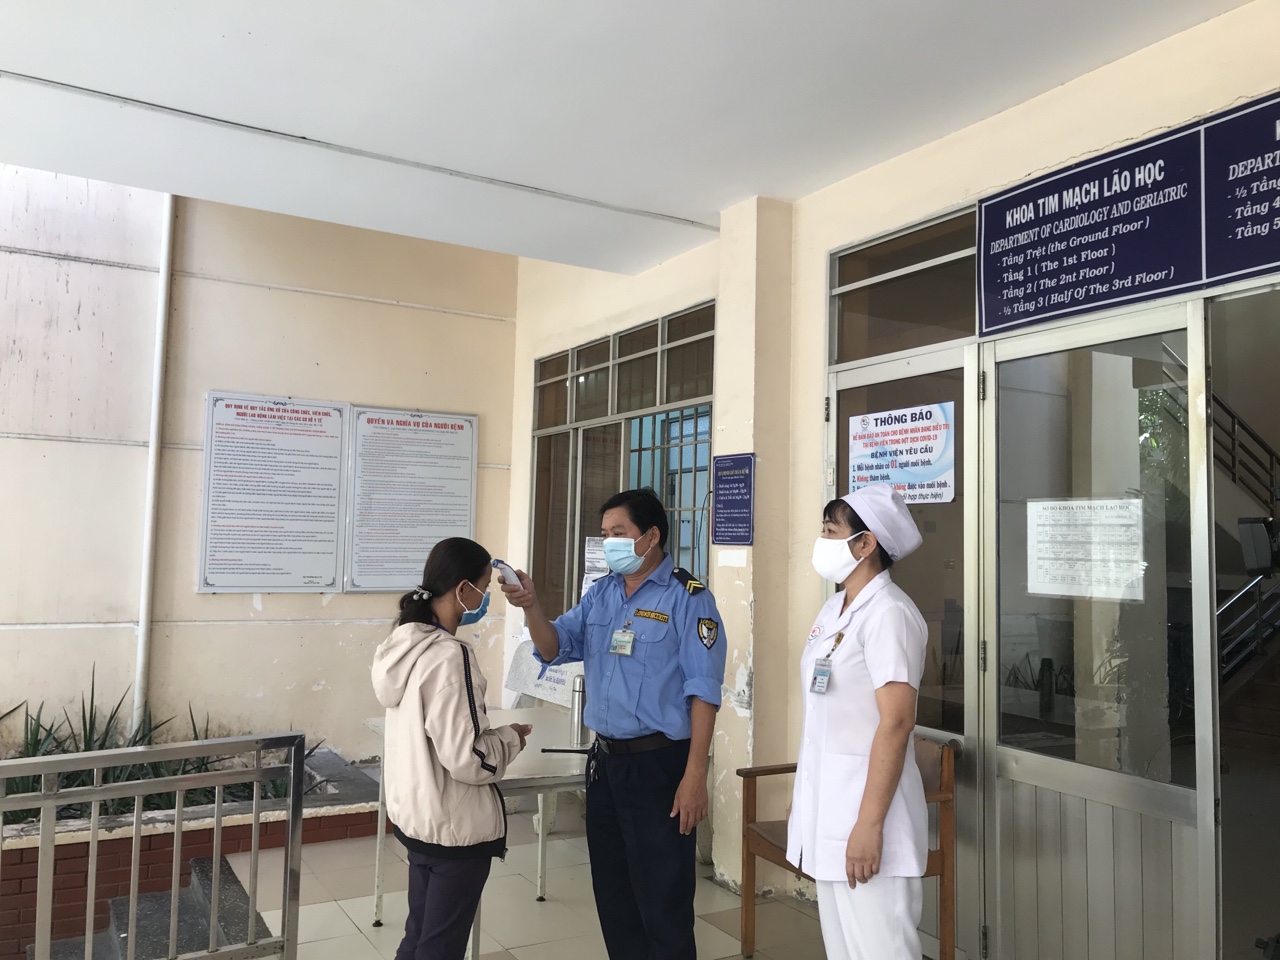 Kiểm tra thân nhiệt người nuôi bệnh tại Bệnh viện Đa khoa tỉnh Khánh Hoà